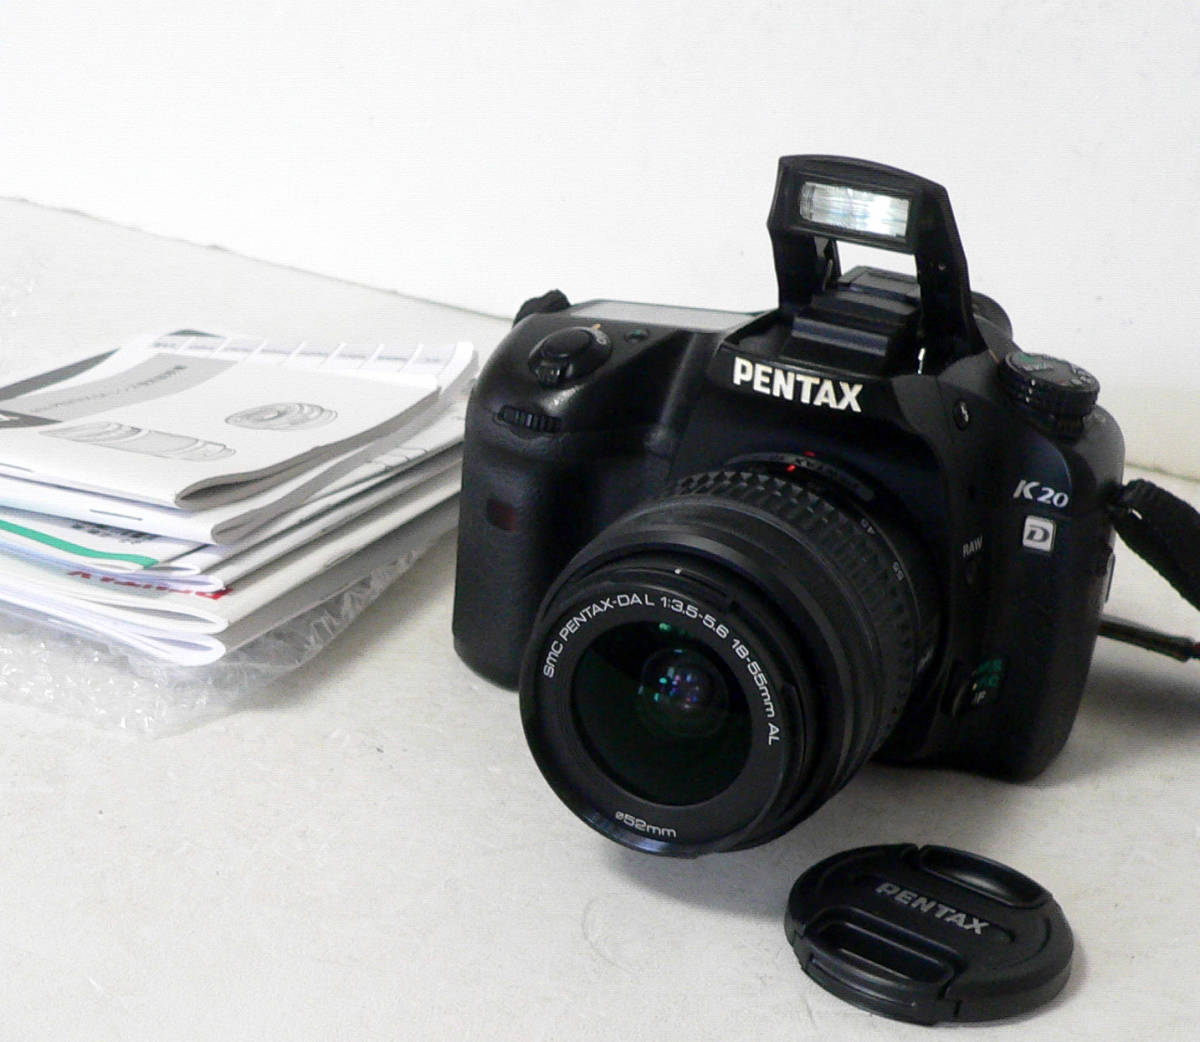 ★ 中古 / PENTAX K20 + SMC PENTAX-DAL 18-55mm F3.5-5.6 AL ★_画像1